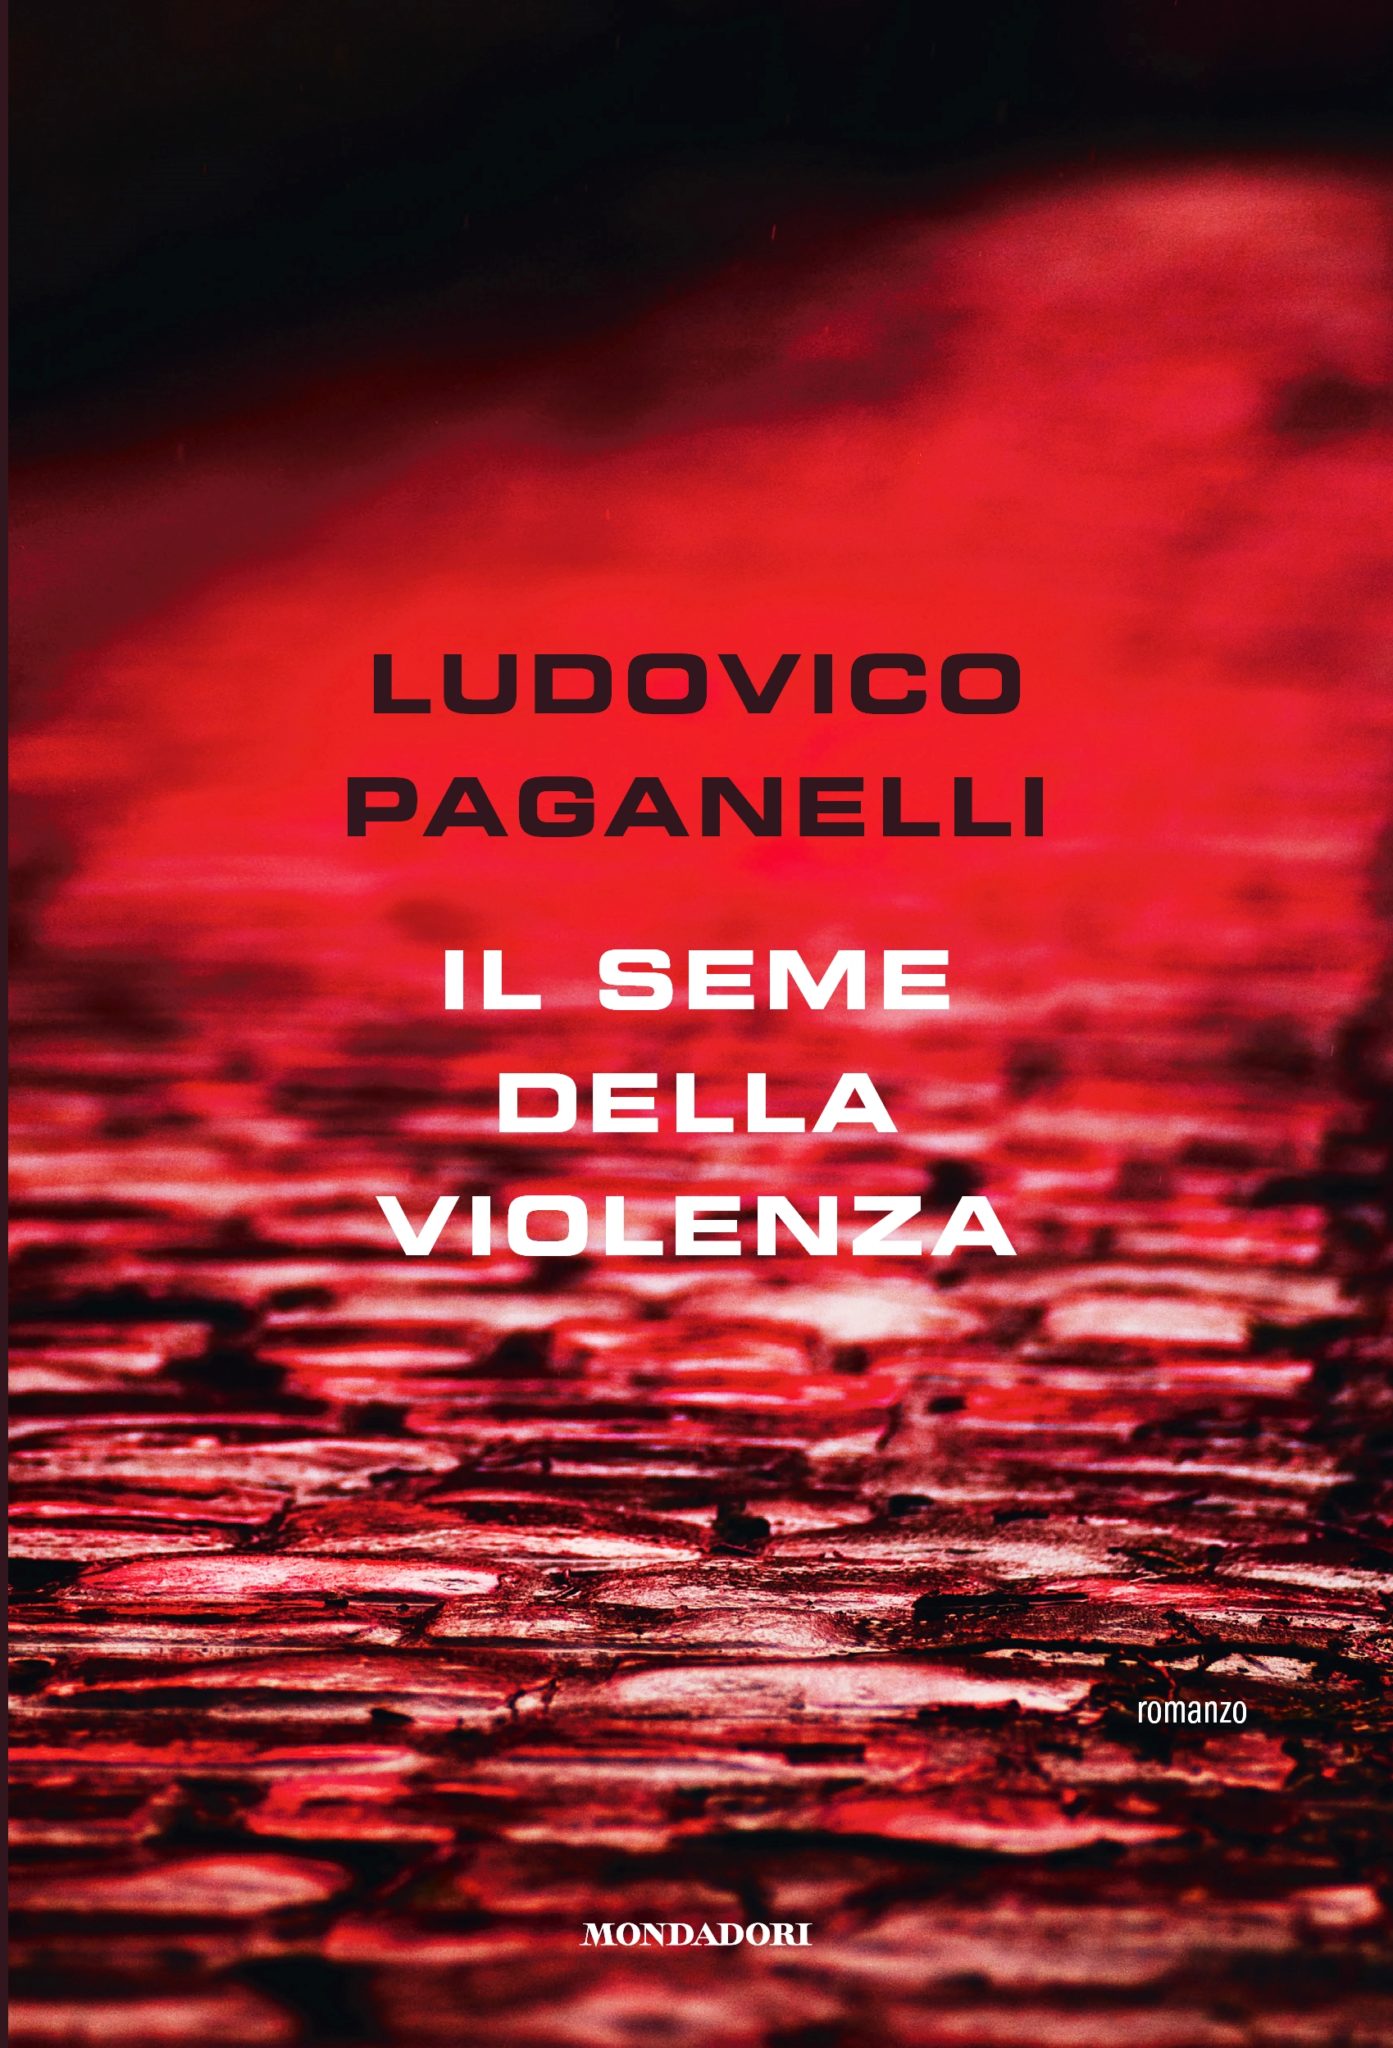 Ludovico Paganelli:  “Il seme della violenza”